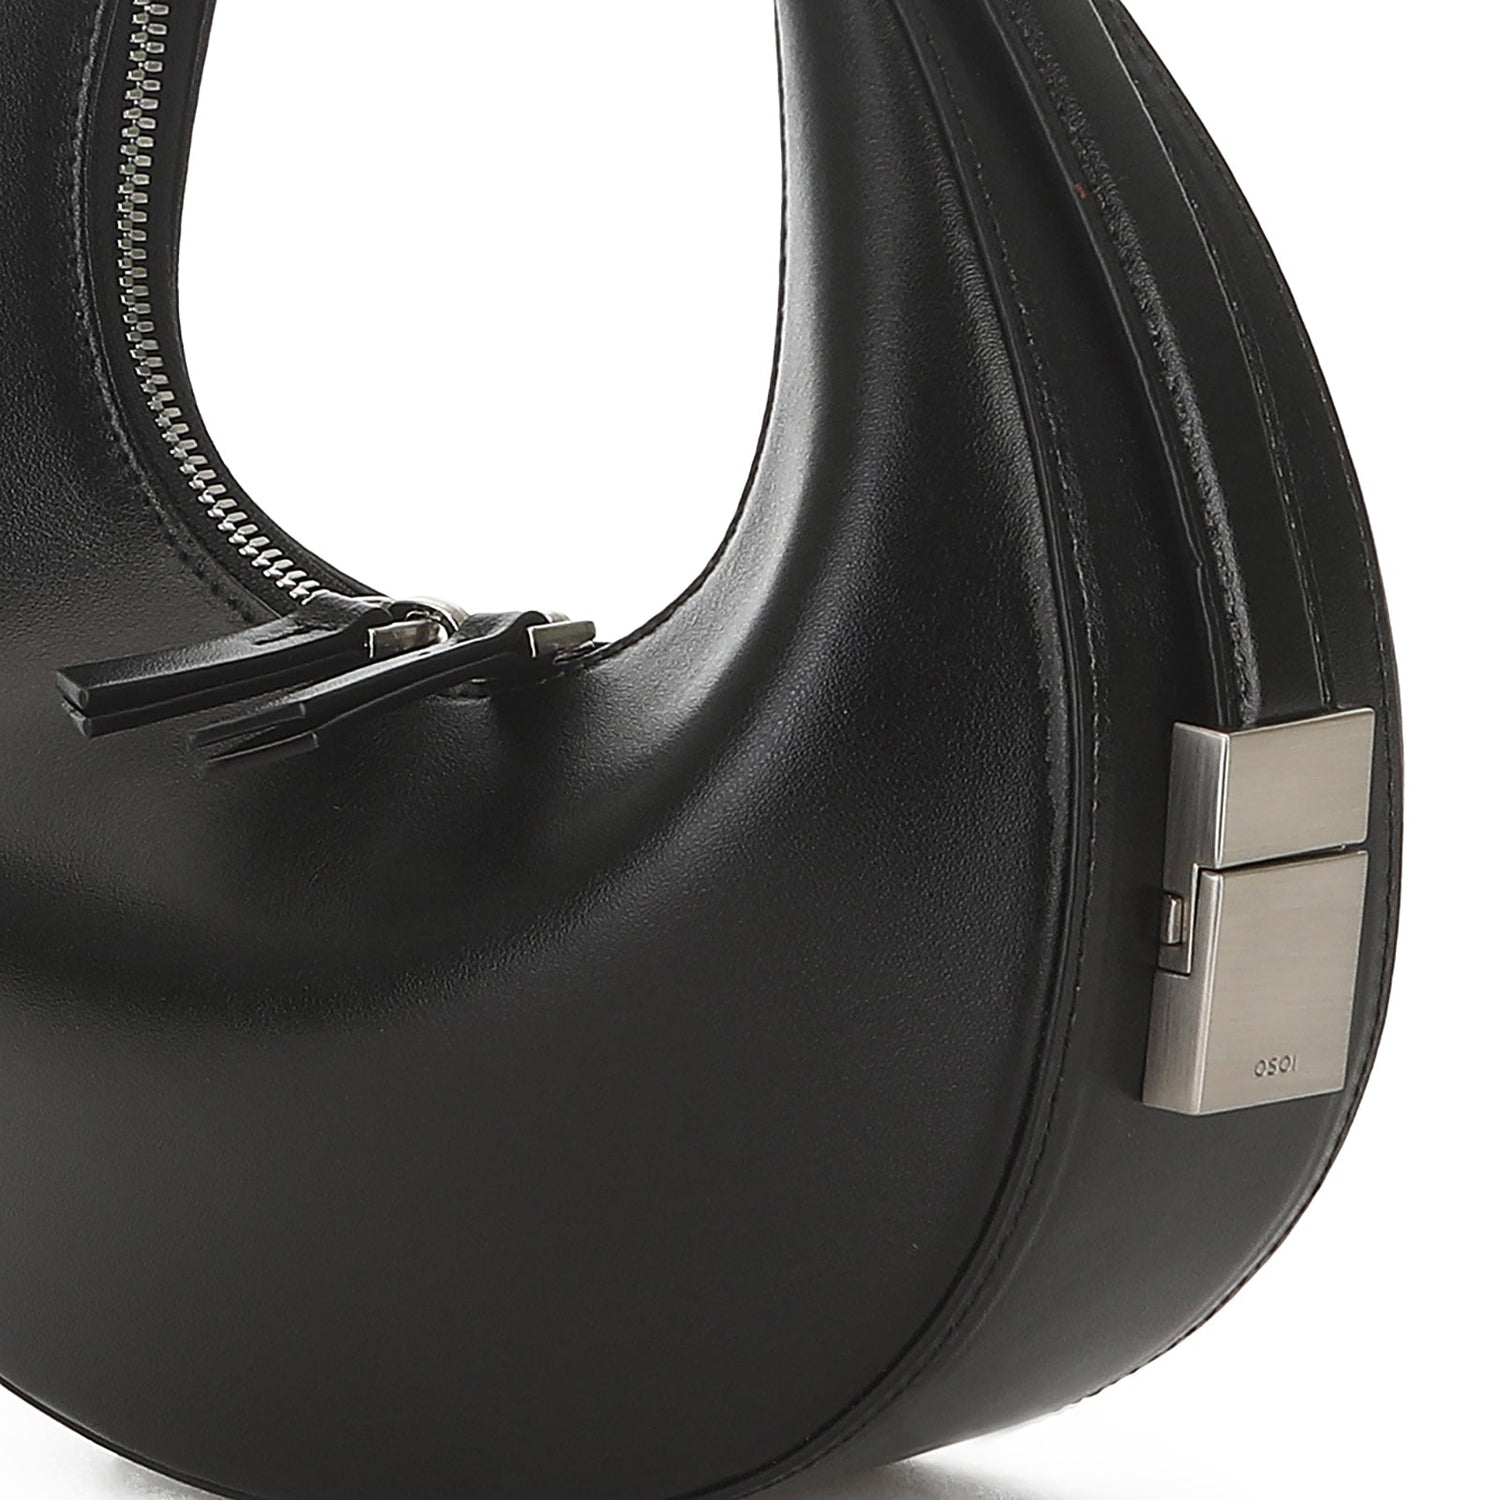 Osoi-Black Leather Toni Mini Handbag-21SB030-101-01-dgallerystore